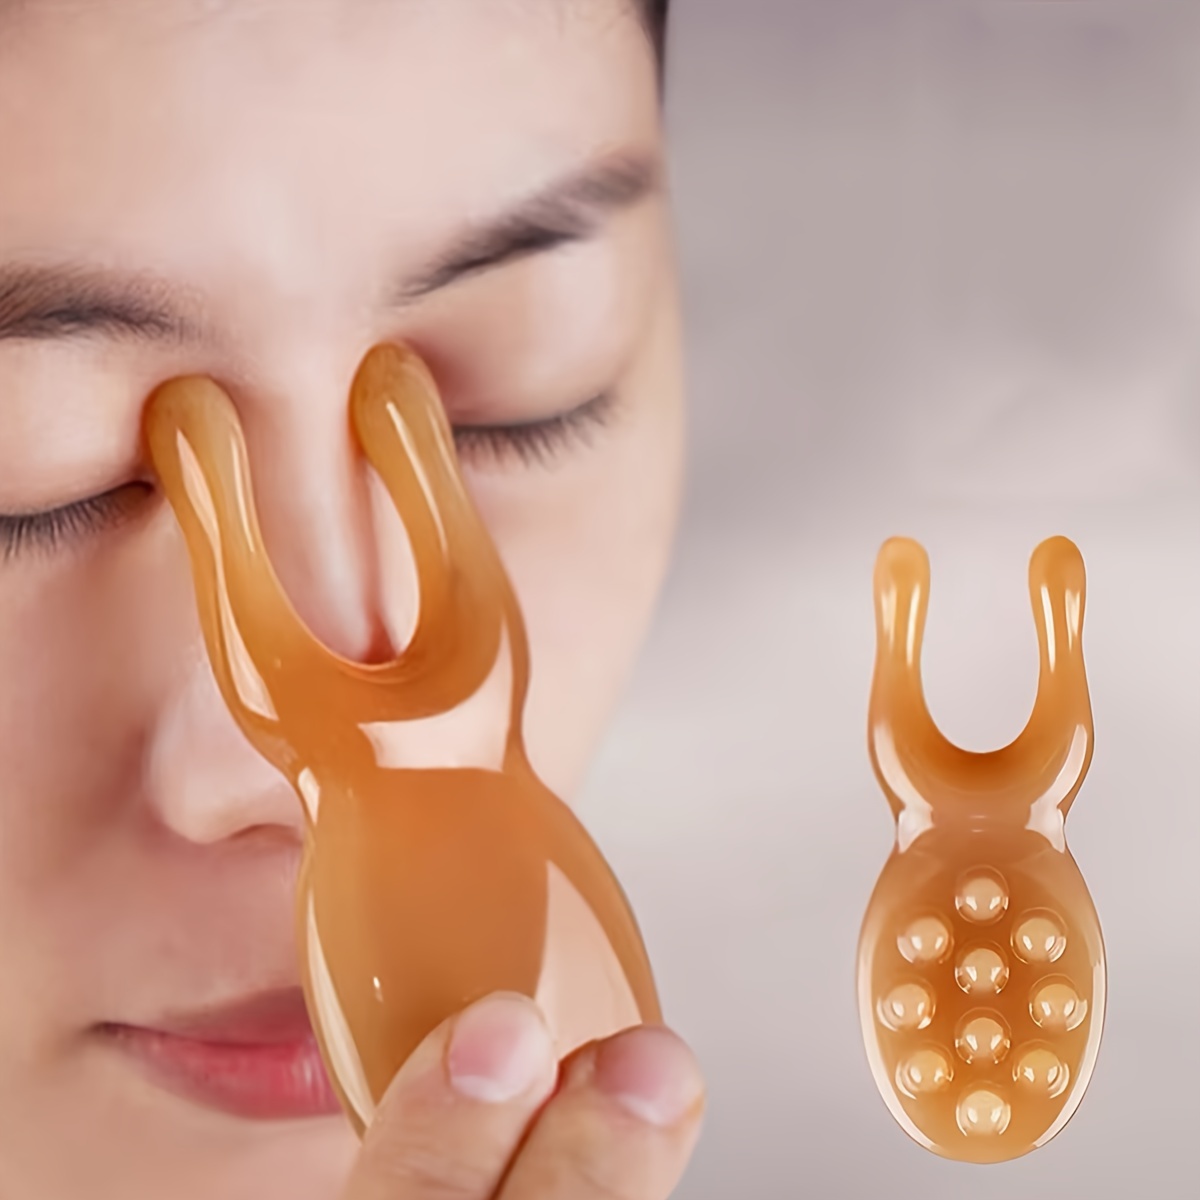 

3pcs Spa Gua Sha Facial Massage Tool Set - Premium Handheld Skin Health & Elasticity Enhancer, Includes Gua Sha Scraping Board, Acupressure Stick, Compact Massager